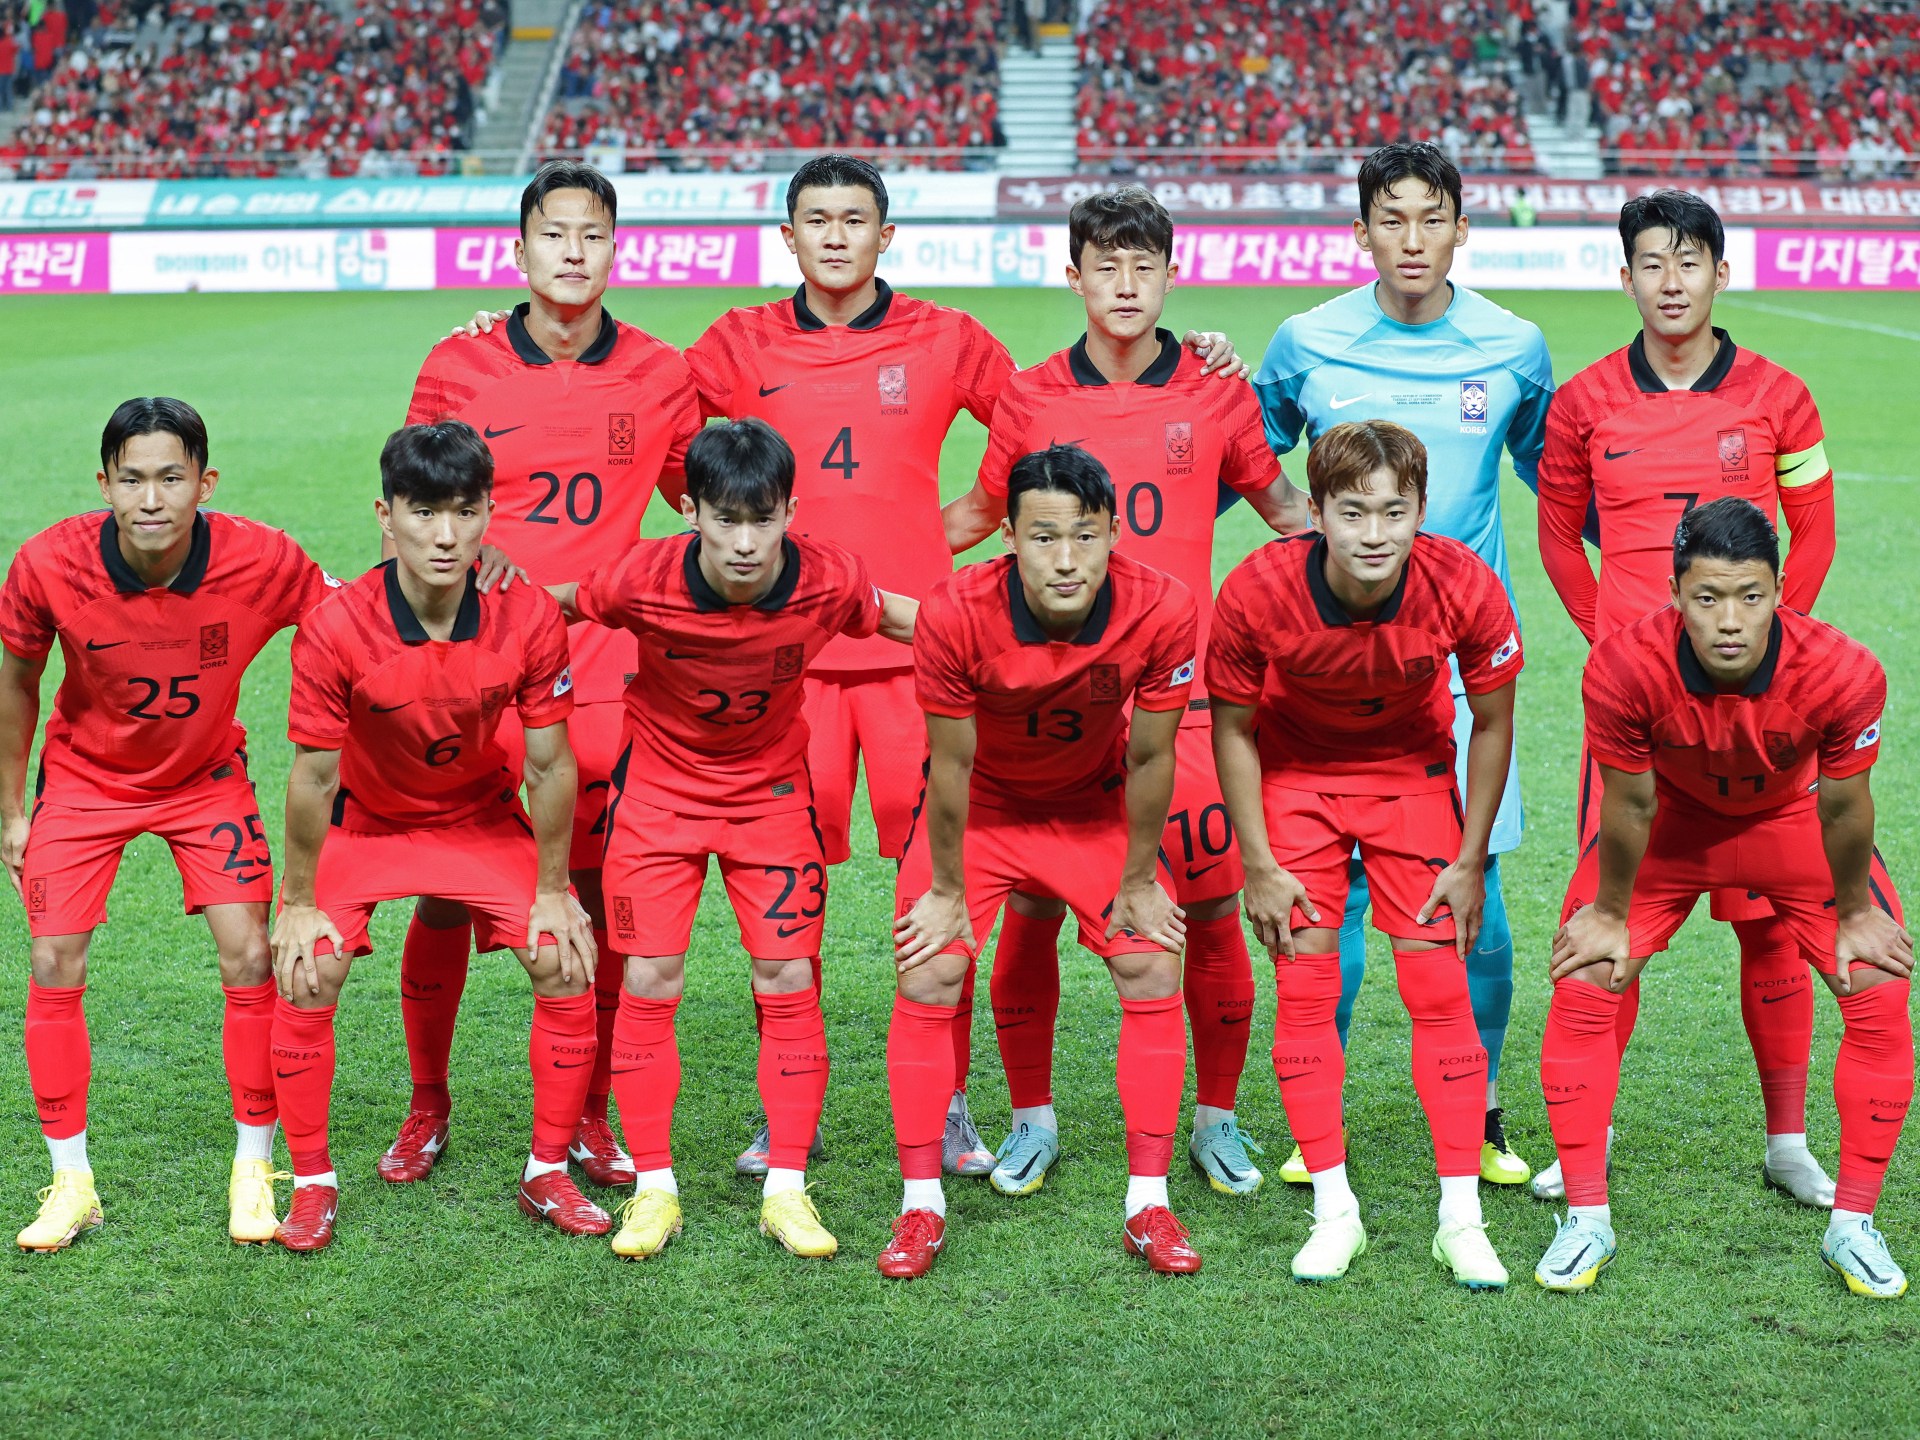 Prévia da equipe Copa do Mundo 2022: Coreia do Sul |  Notícias sobre a Copa do Mundo 2022 no Catar